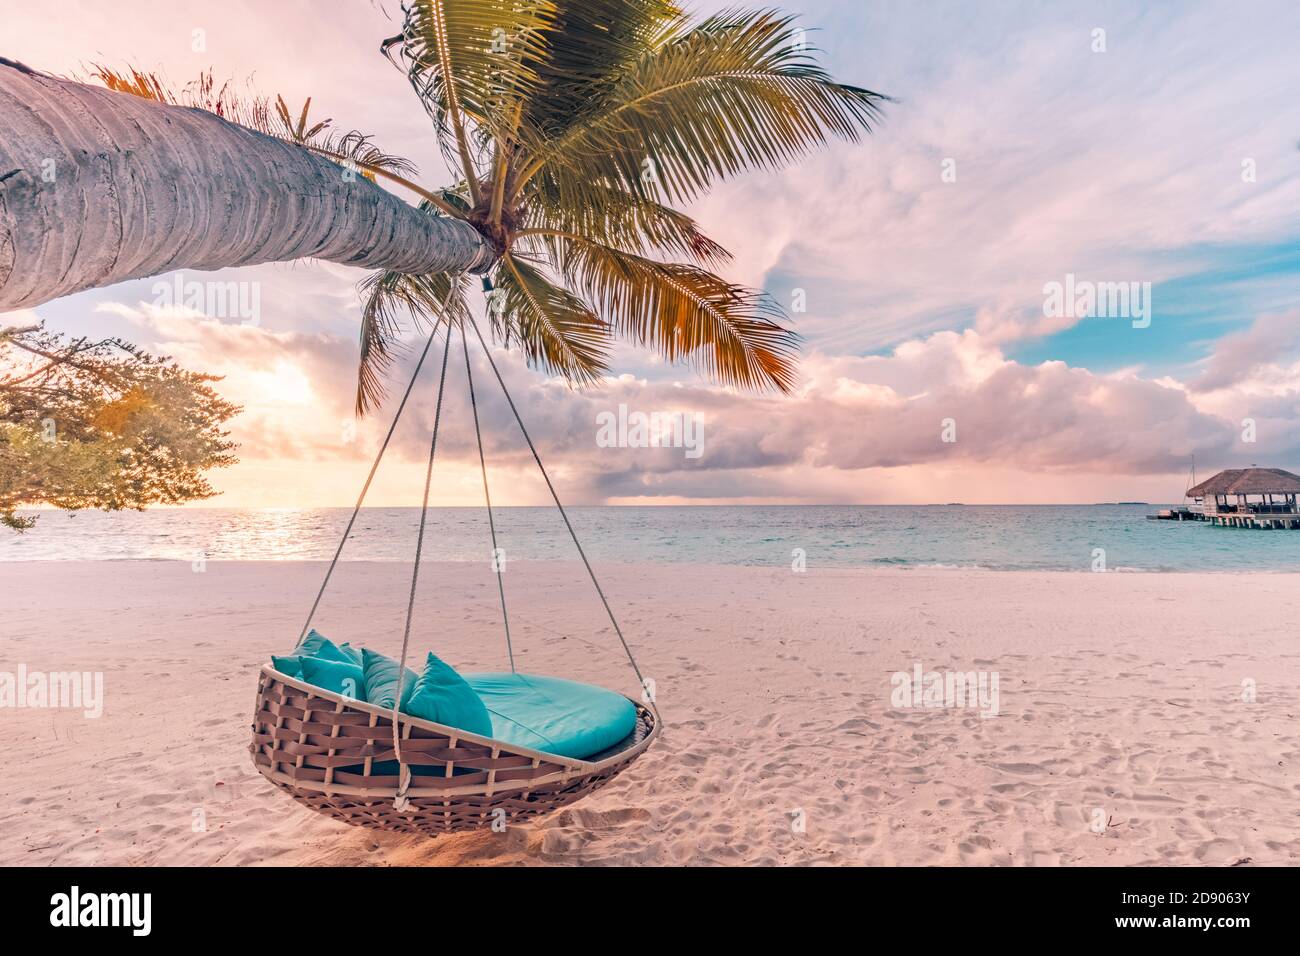 Plage tropicale coucher de soleil panorama comme paysage d'été avec balançoire de plage hamac et sable blanc, mer calme pour la bannière de plage. Des vacances parfaites sur la plage Banque D'Images